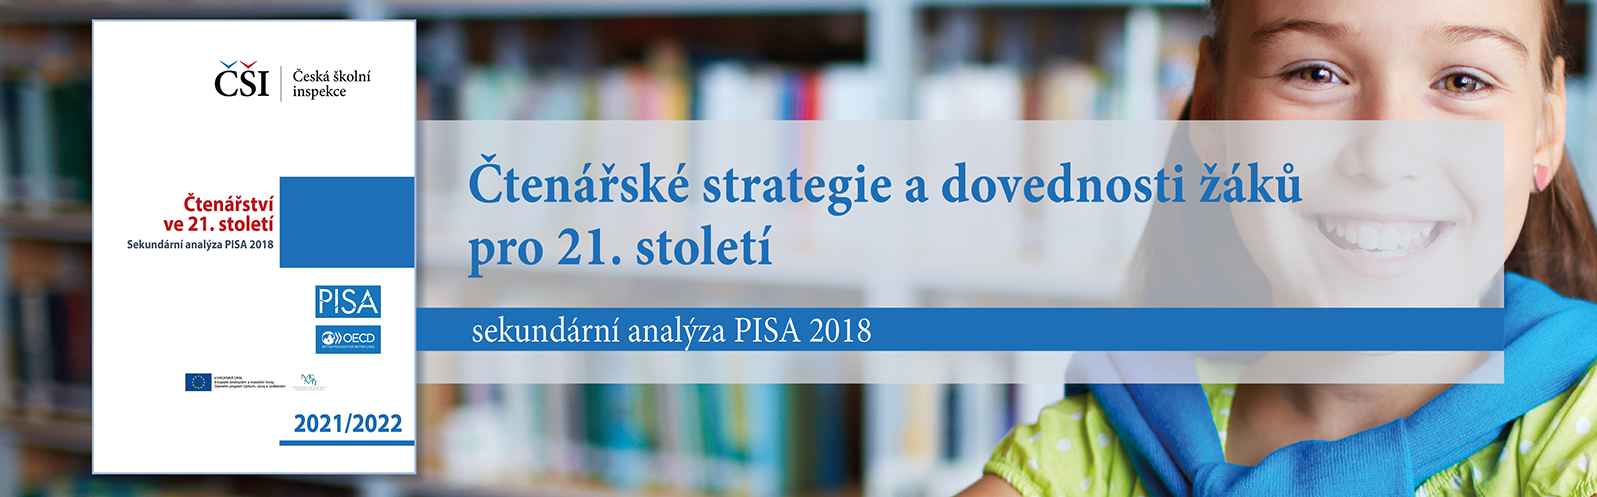 PISA 2018: Čtenářství ve 21. století